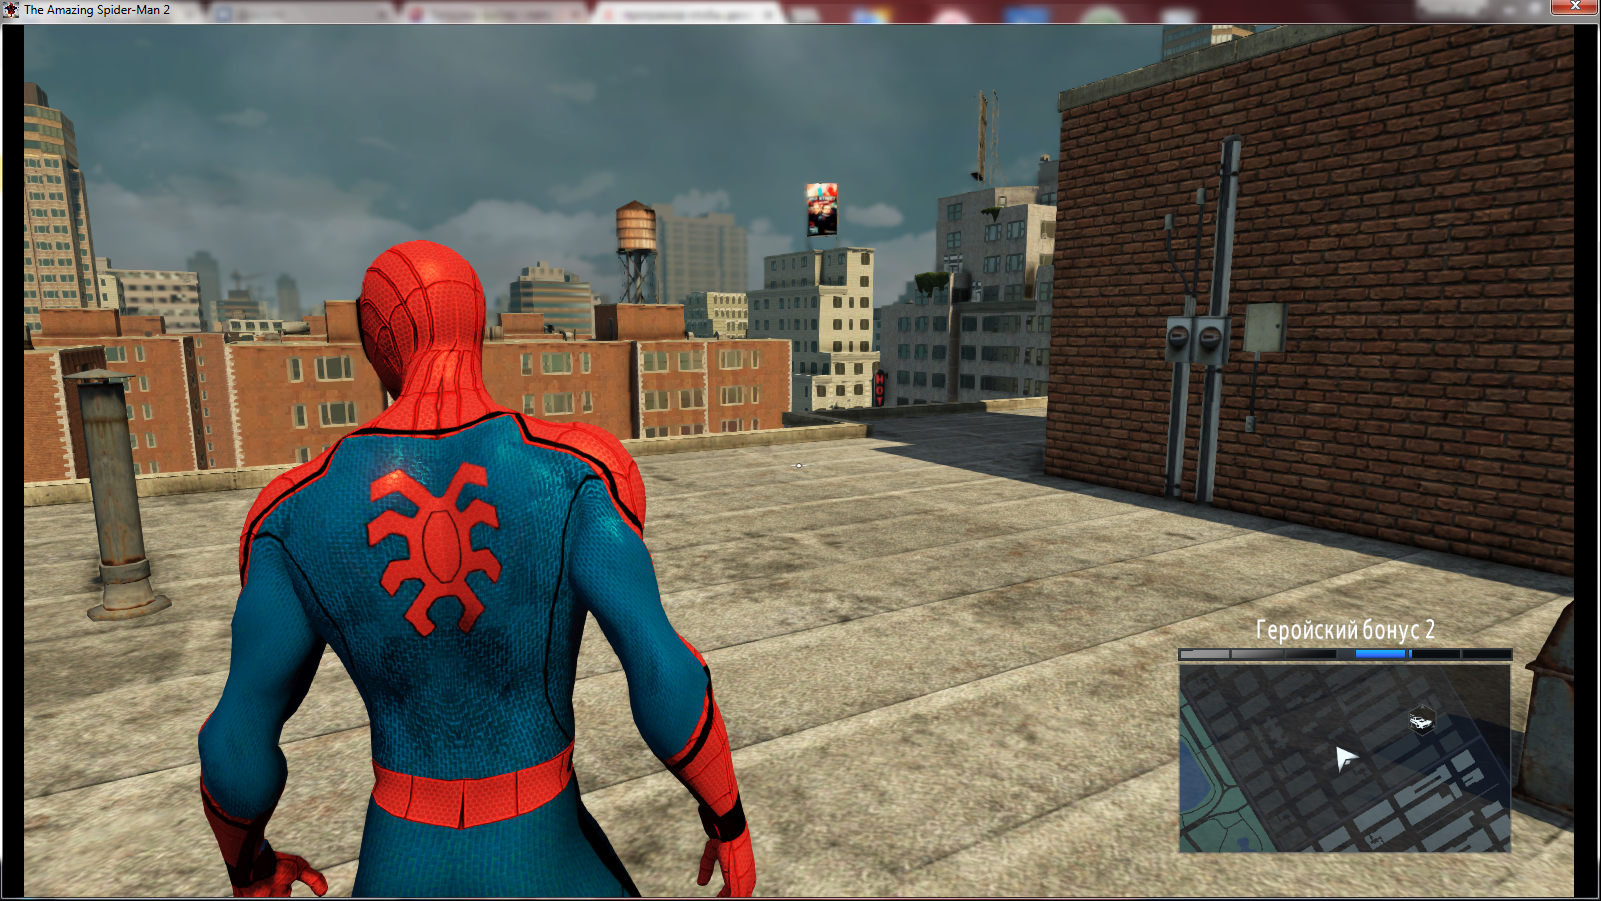 Поставь паук 2. Человек паук зе амазинг 2. Spider man 2 4 ps1. Новый человек паук 2 игра костюмы. Spider man 2 ps1 костюмы.